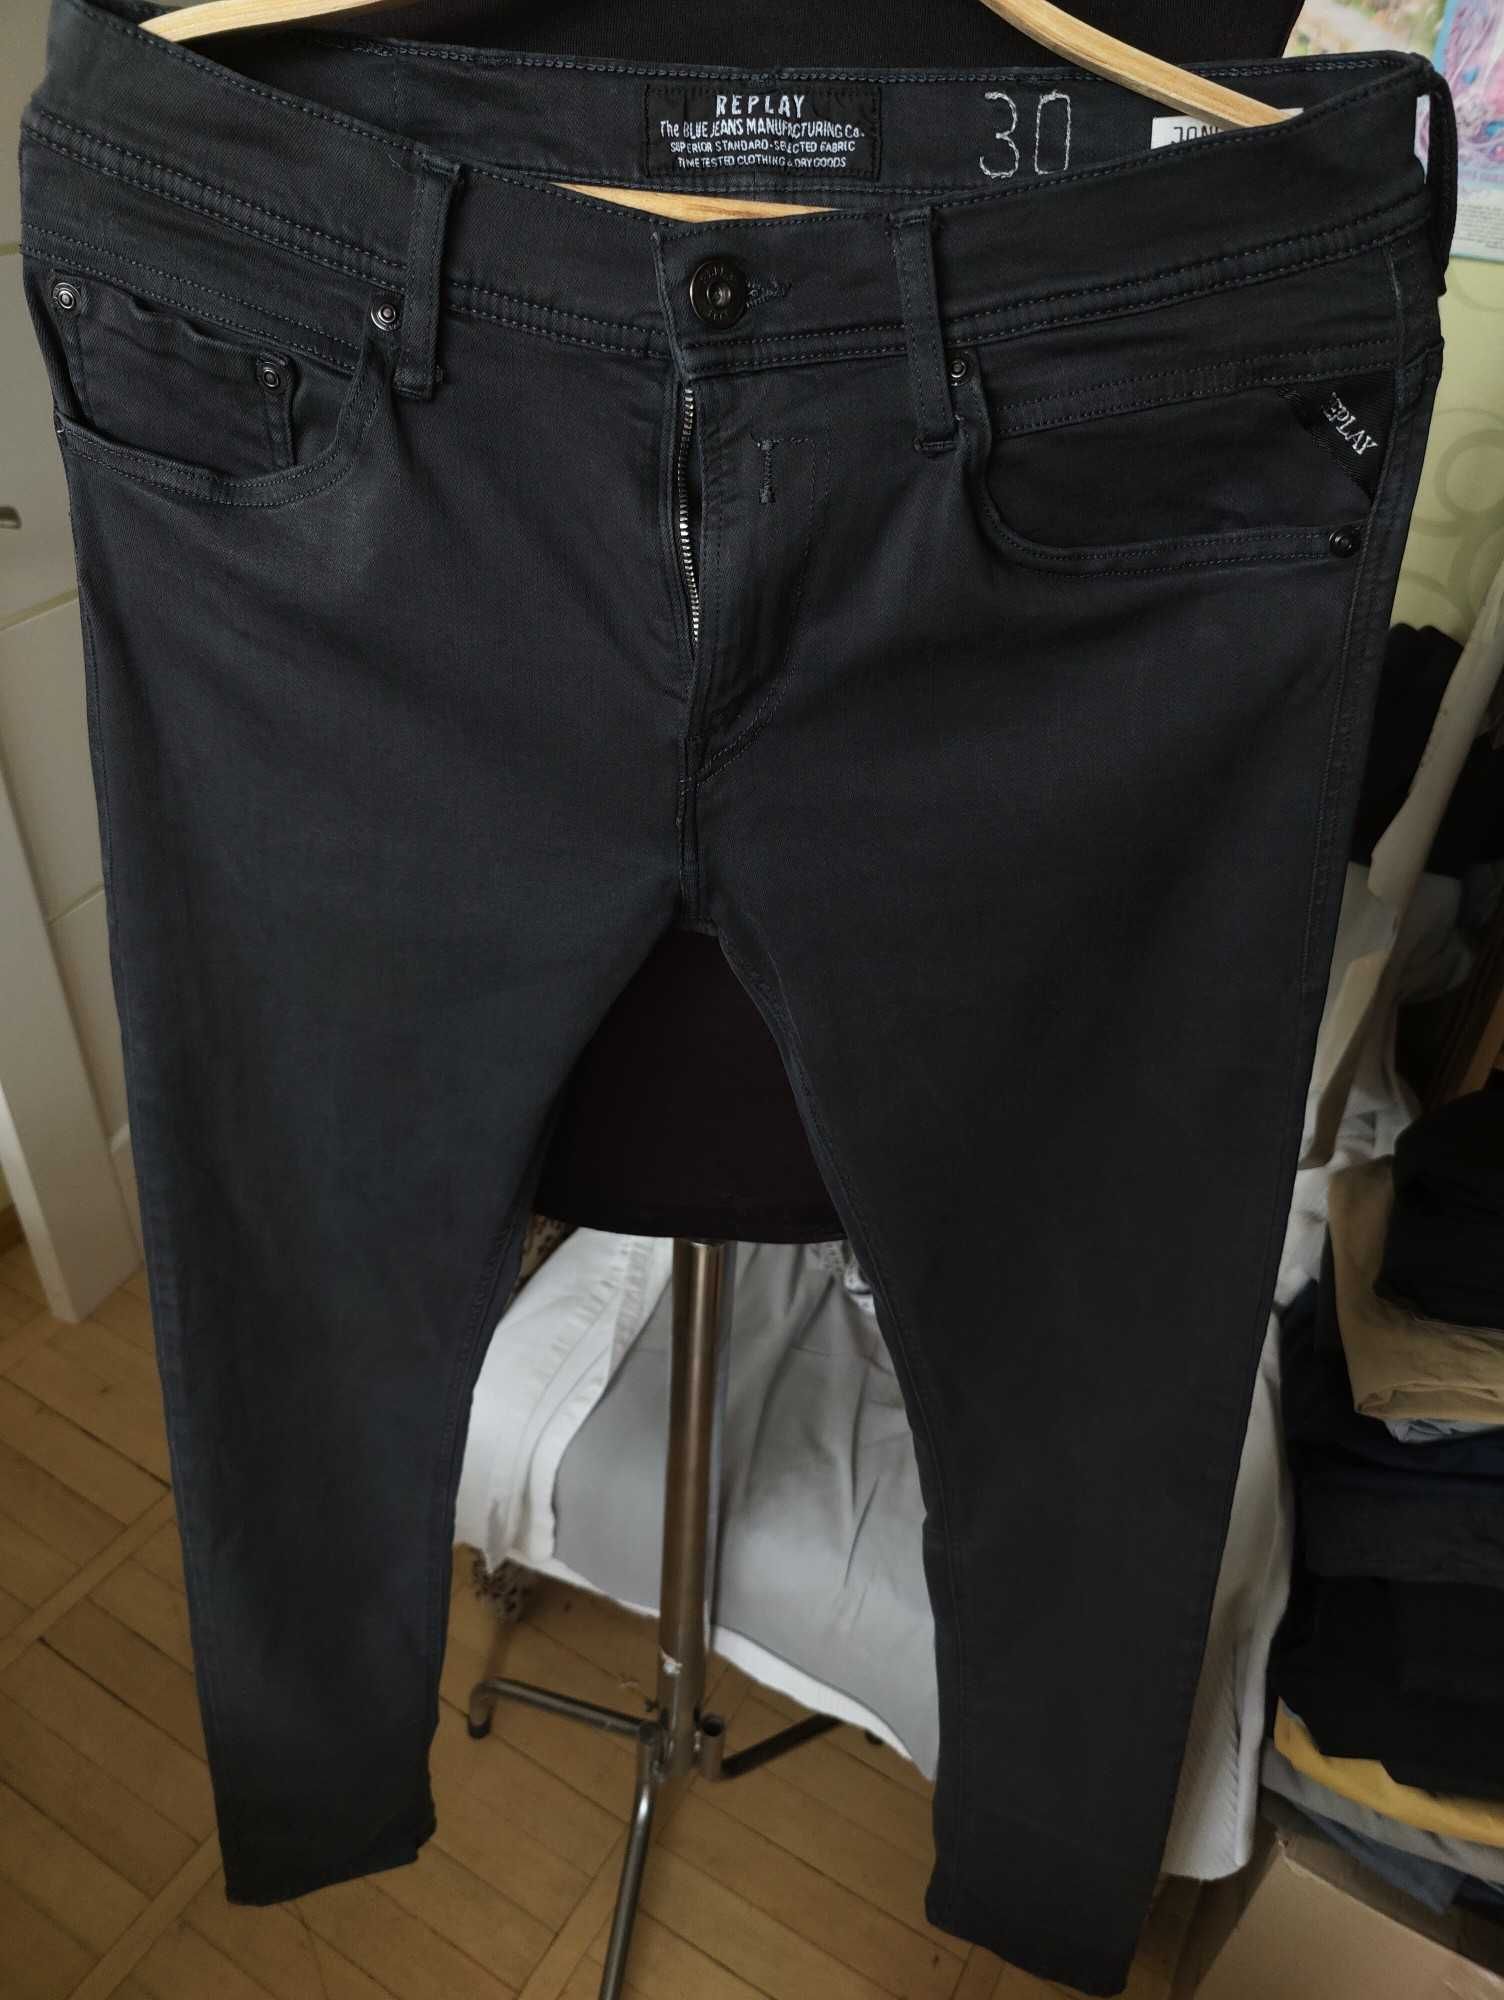 Джинсы Replay Jondrill jeans Italy w30 stretch dark grey.